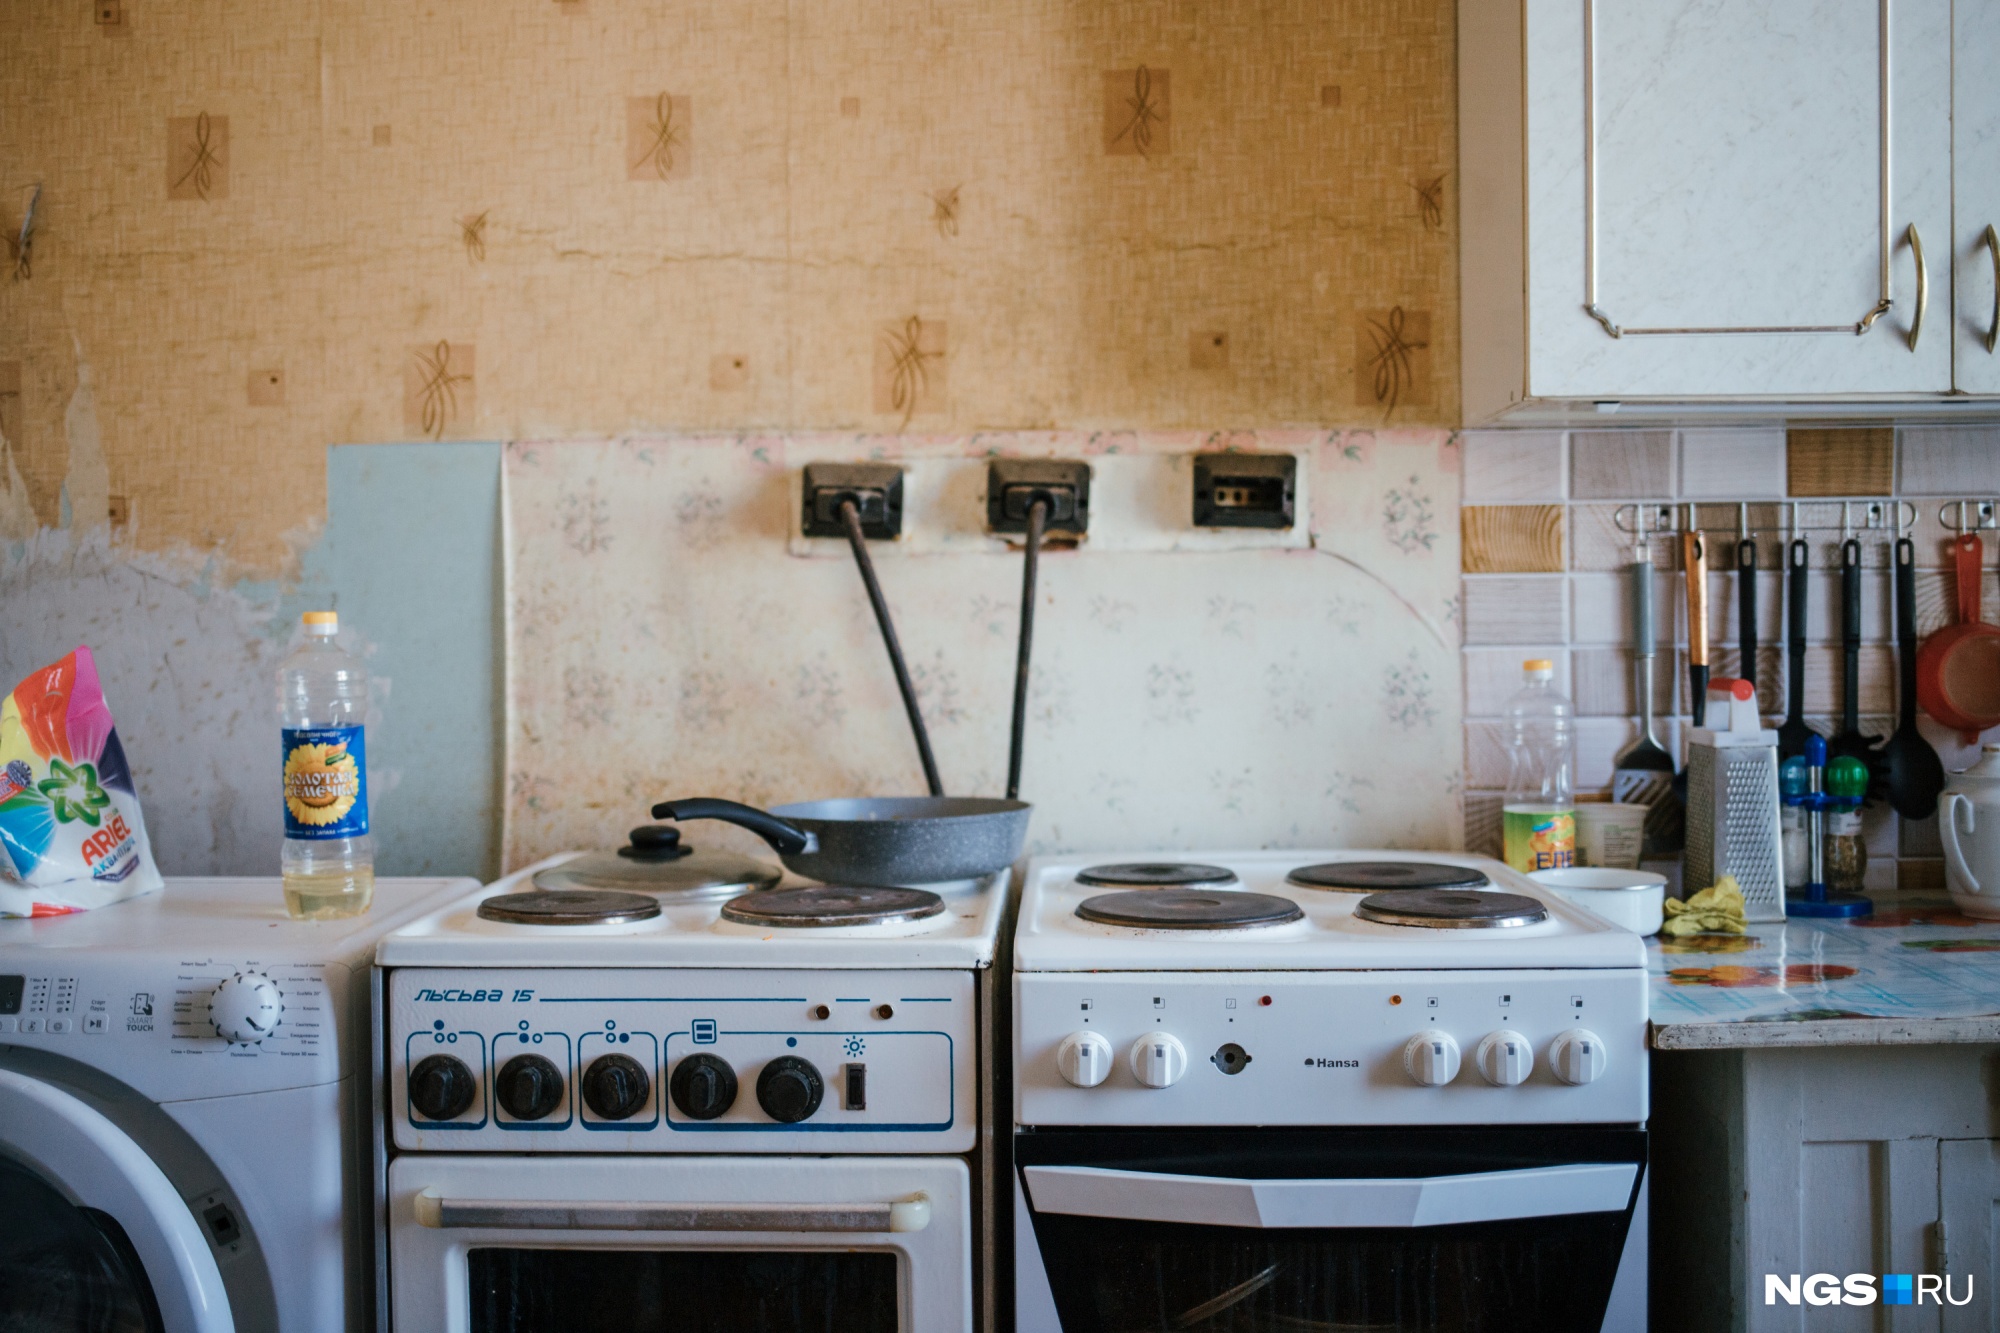 На кухне — две плиты, если бы еще одна комната была заселена, то расположили бы третью